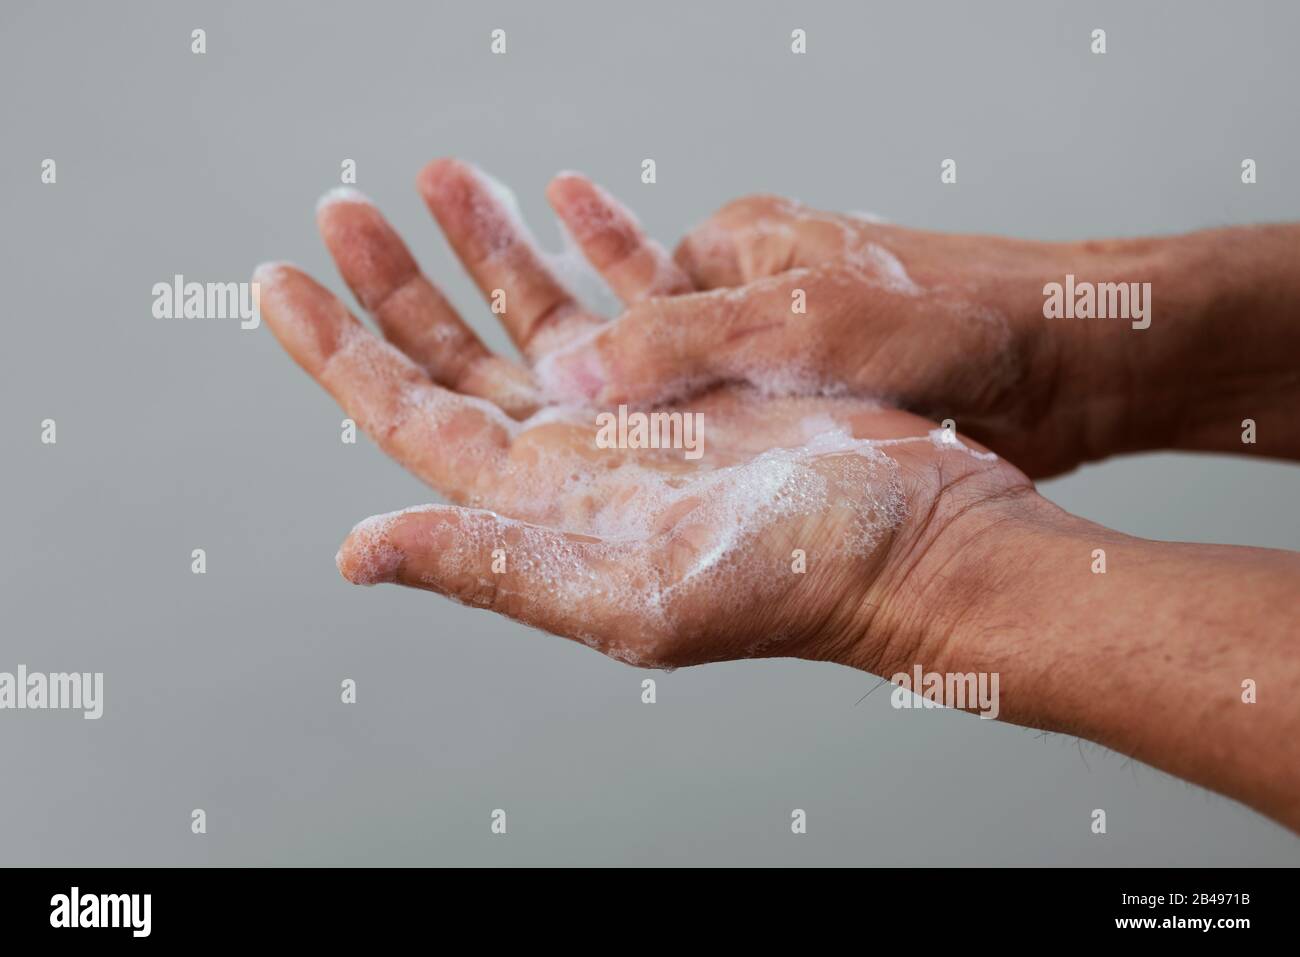 Un homme se laver les mains savon Banque de photographies et d ...